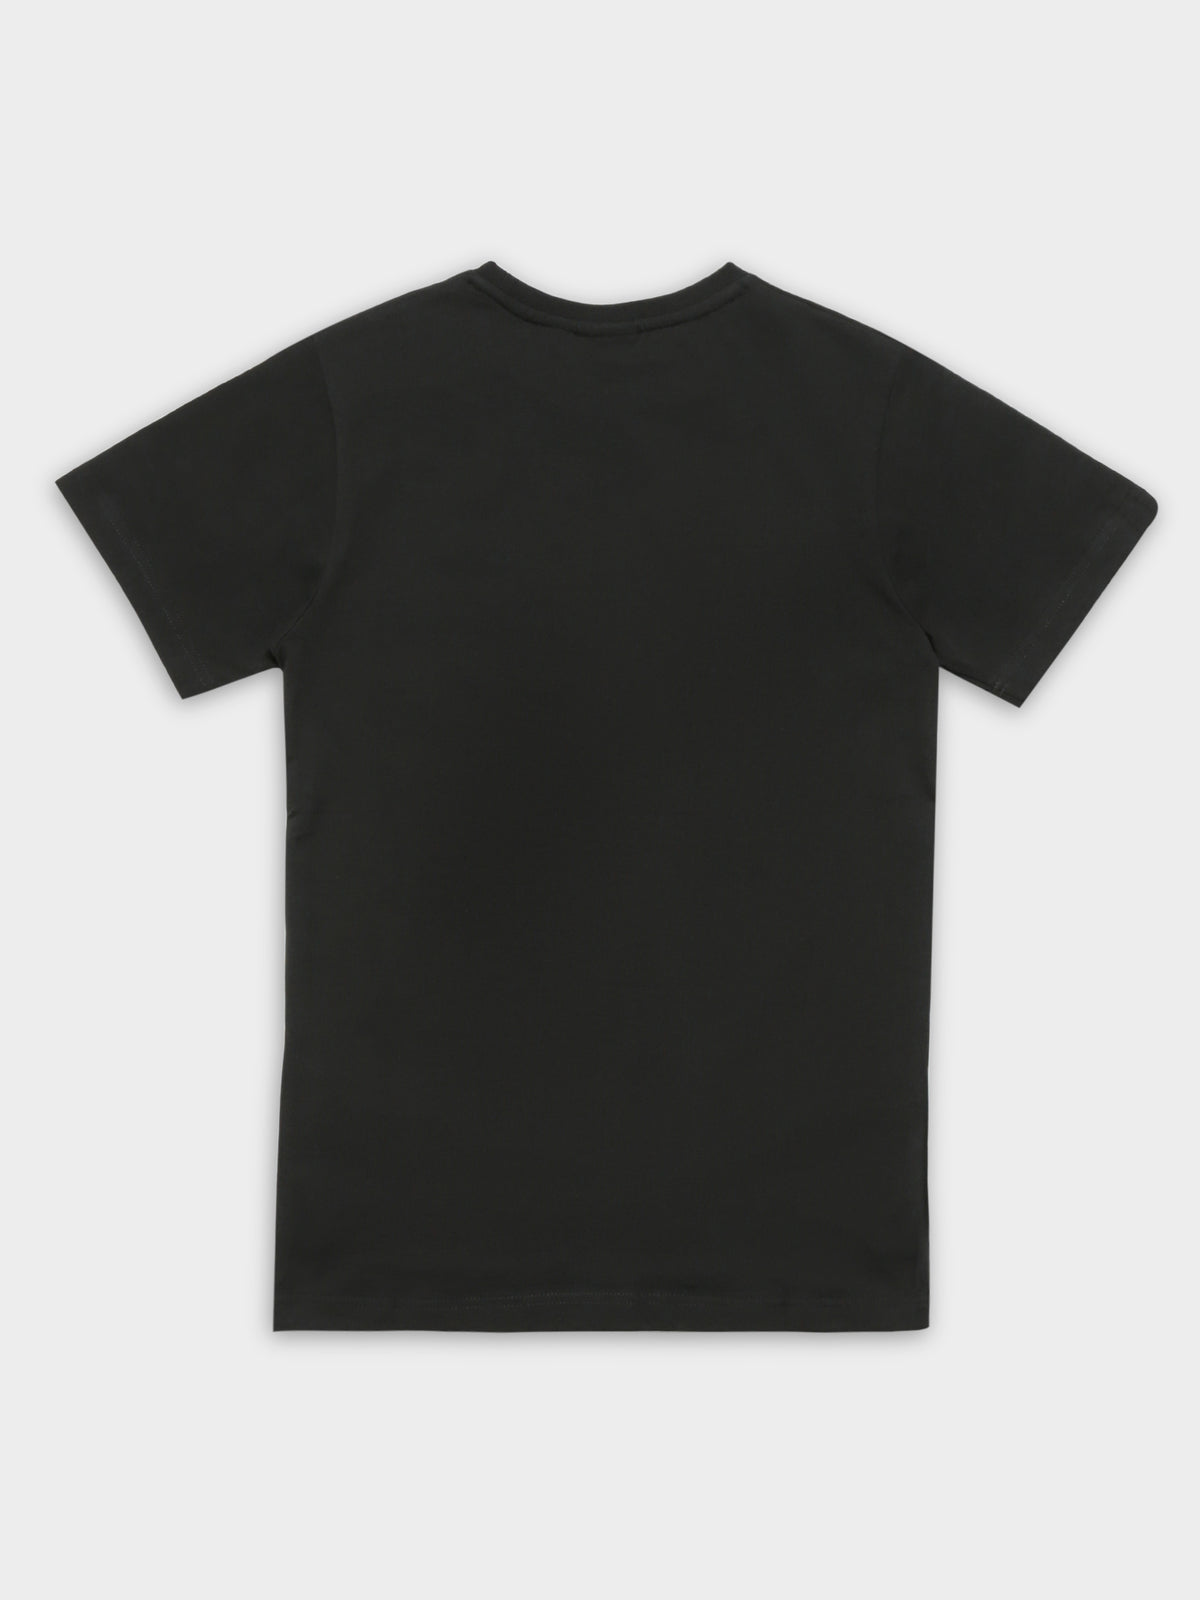 Lattea T-Shirt in Black